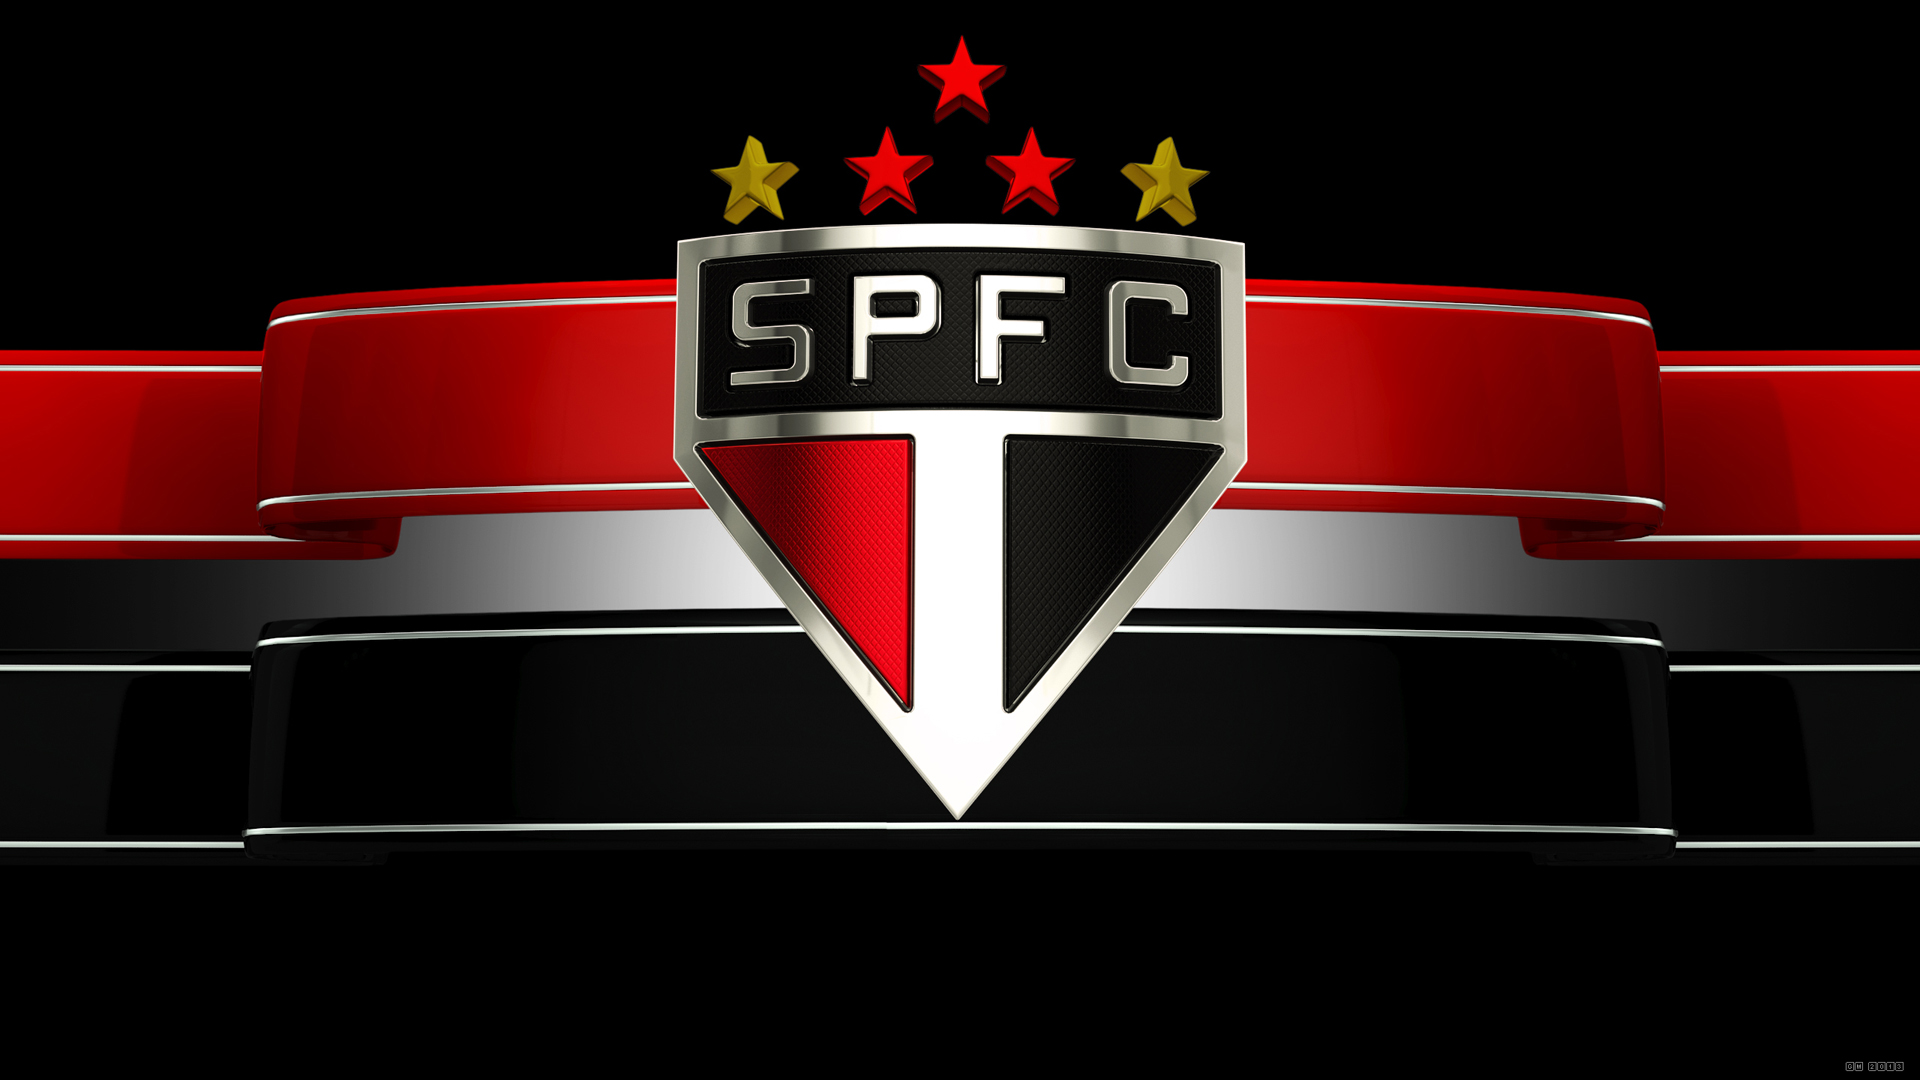 São Paulo FC Backgrounds, Compatible - PC, Mobile, Gadgets| 1920x1080 px